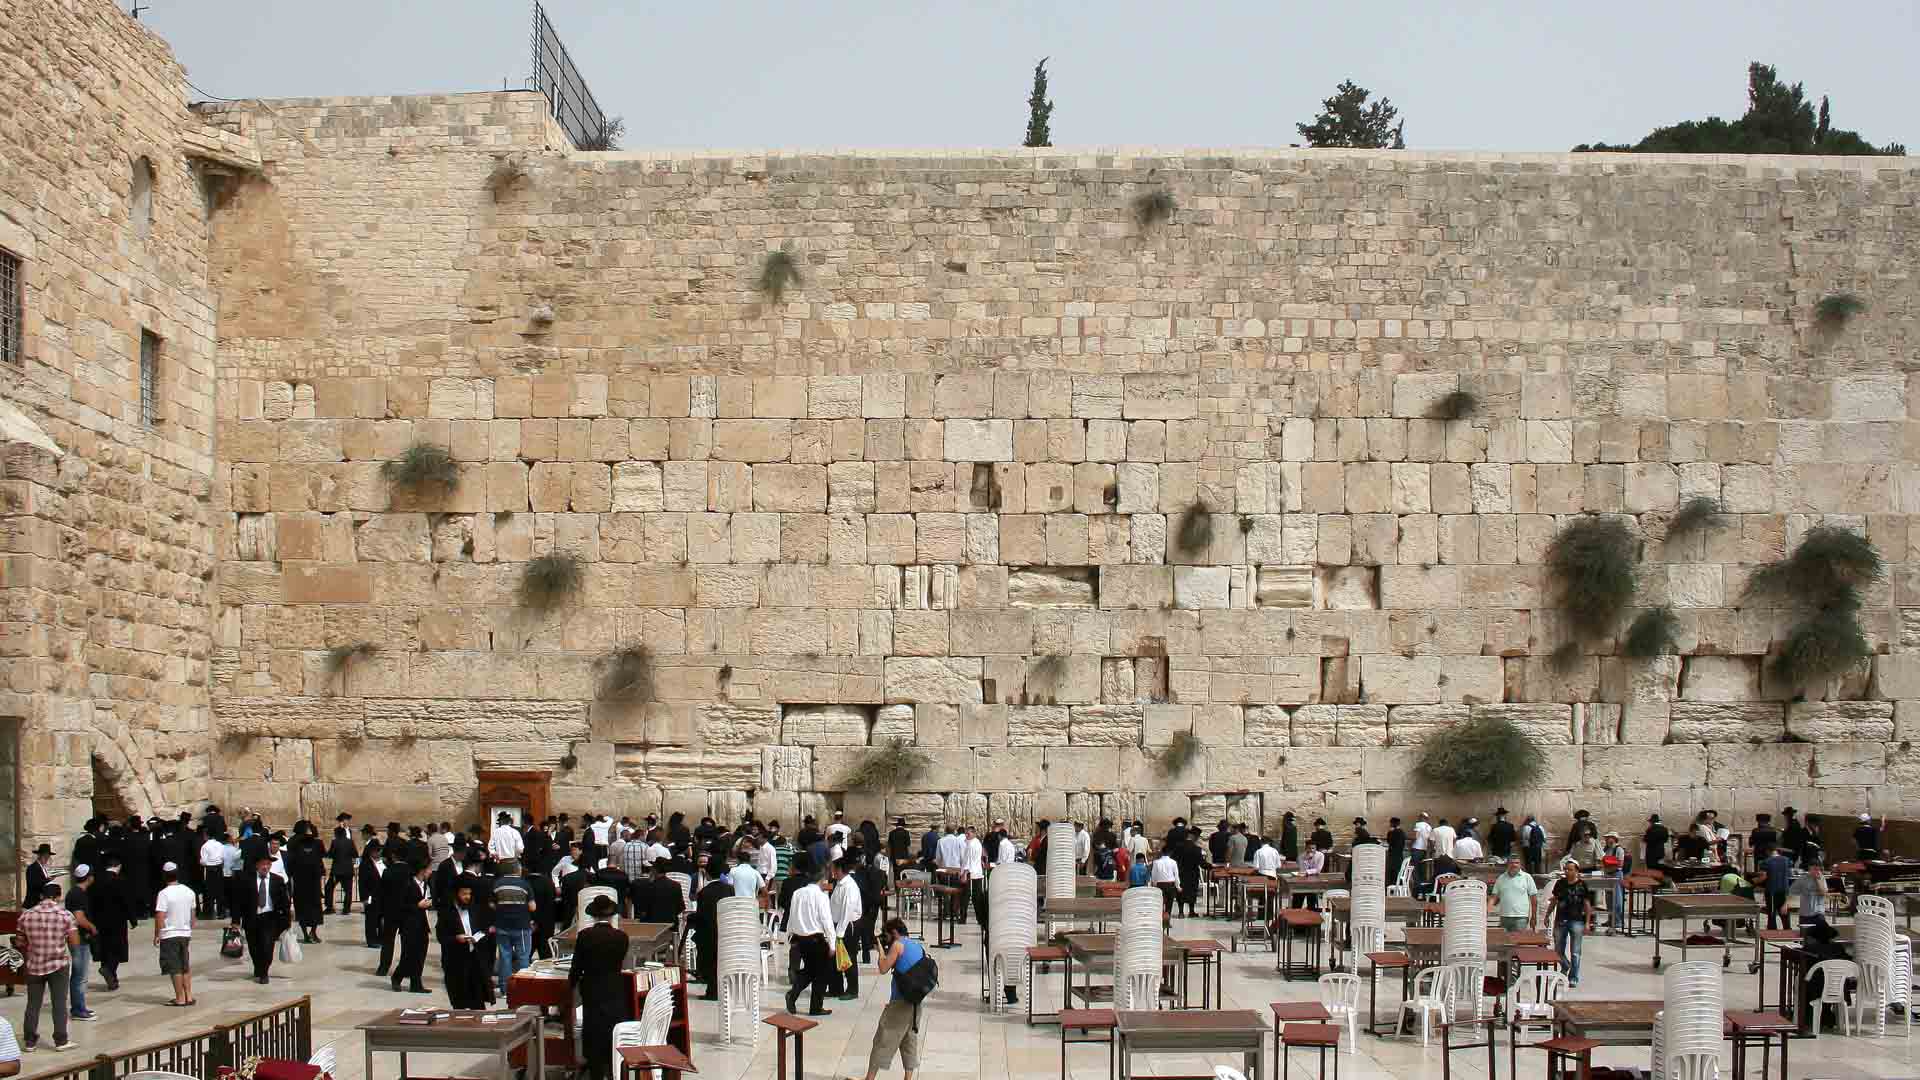 Es uno de los sitios más disputados del mundo, ya que es sagrado tanto para judíos como musulmanes